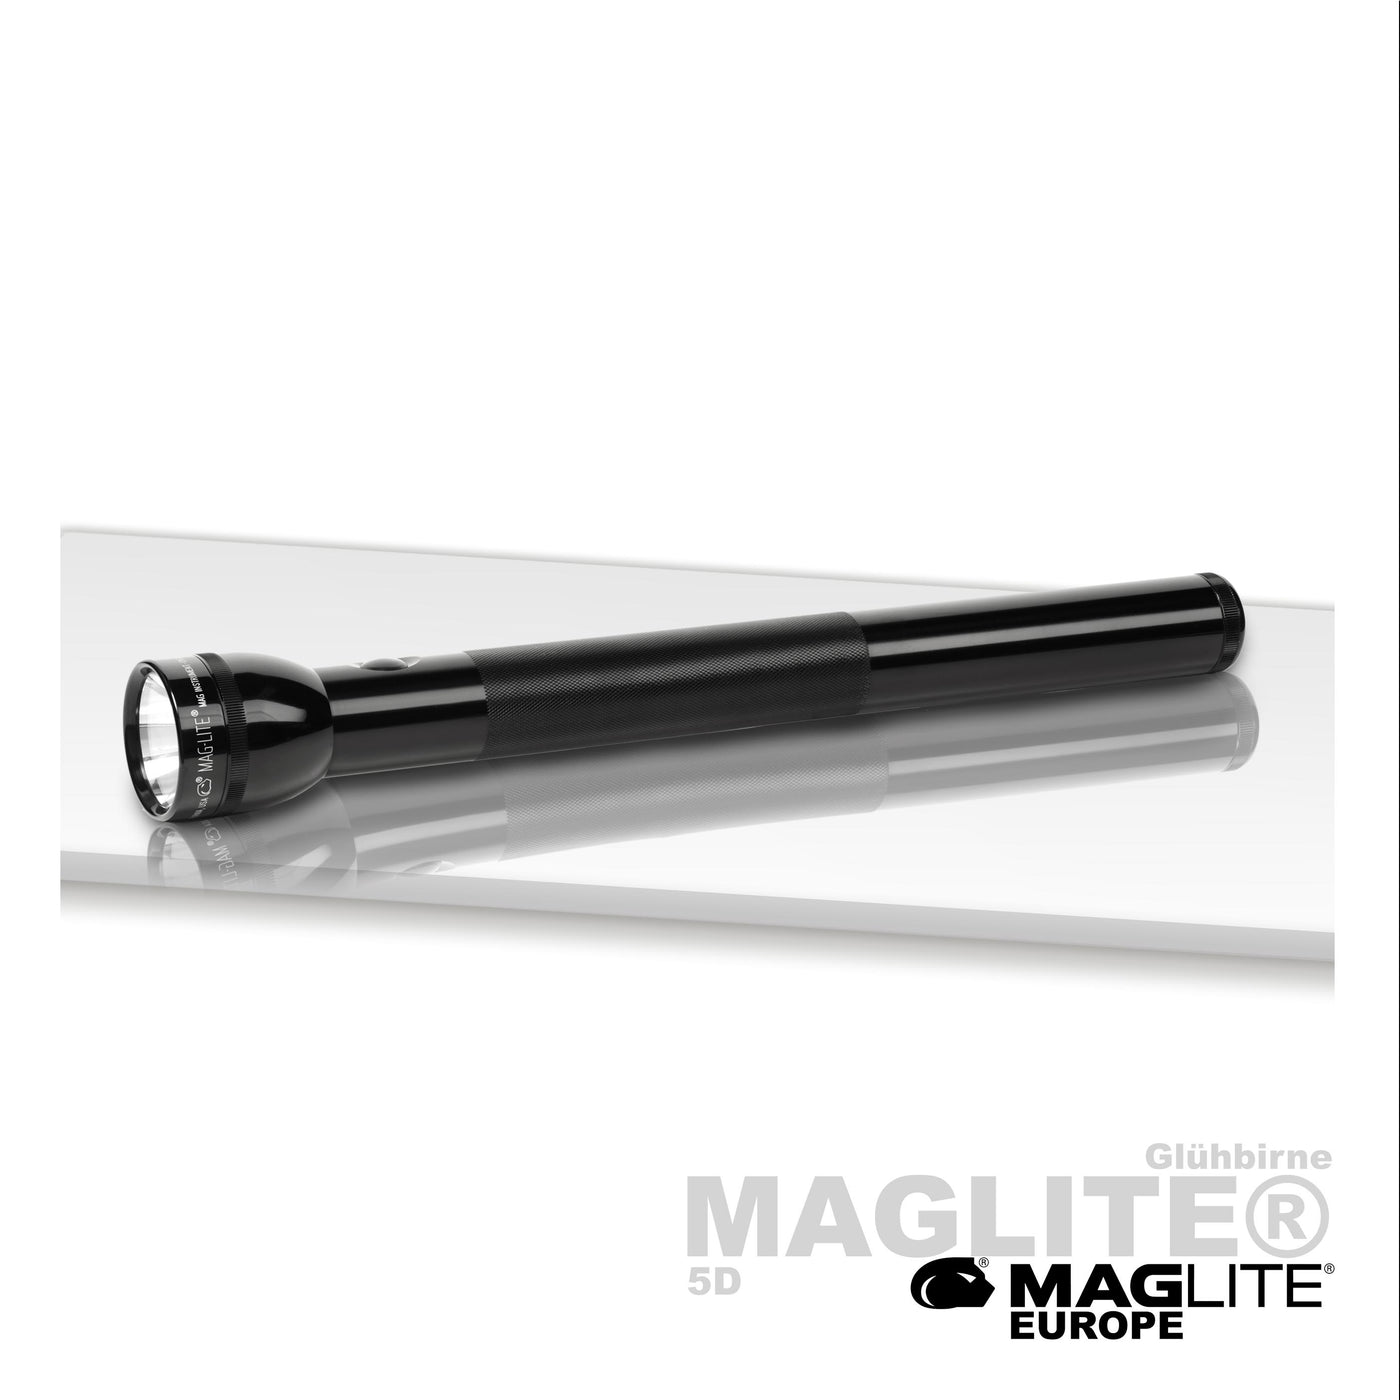 CLASSIC Maglite® 5D